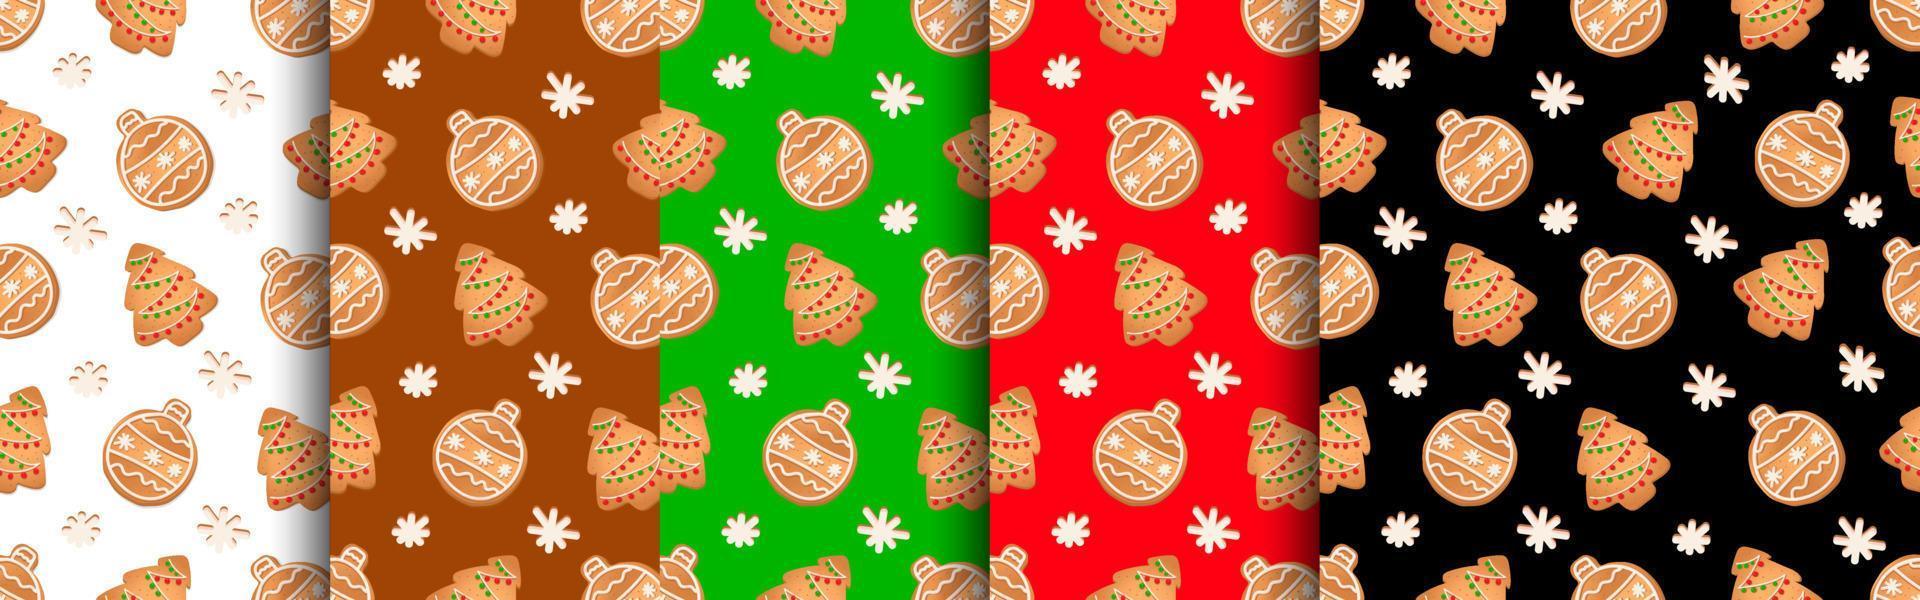 Nahtloses Muster mit Ingwerplätzchen. Lebkuchen, Weihnachtsbaum, Weihnachtskugel. vektor